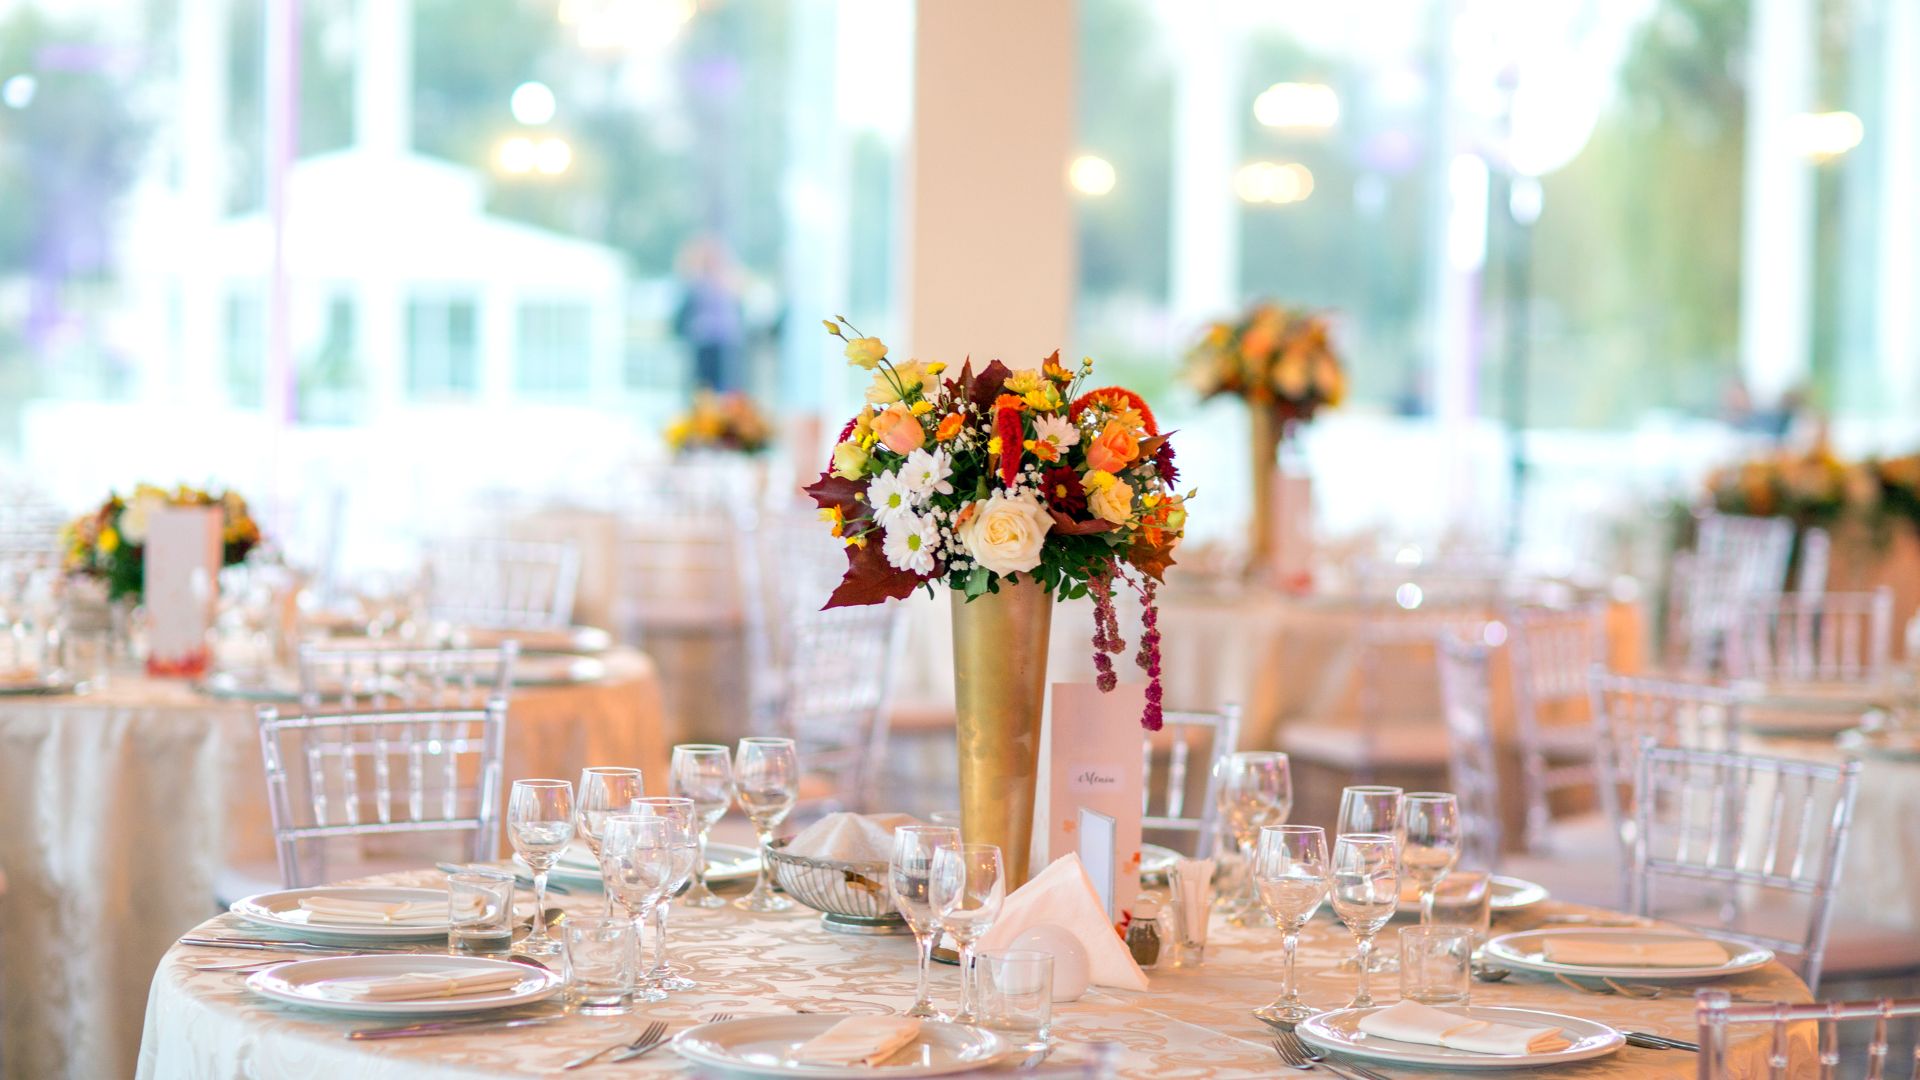 Dekoracje stołów z kwiatami i innymi elementami, których przygotowanie obejmuje organizacja imprez okolicznościowych.